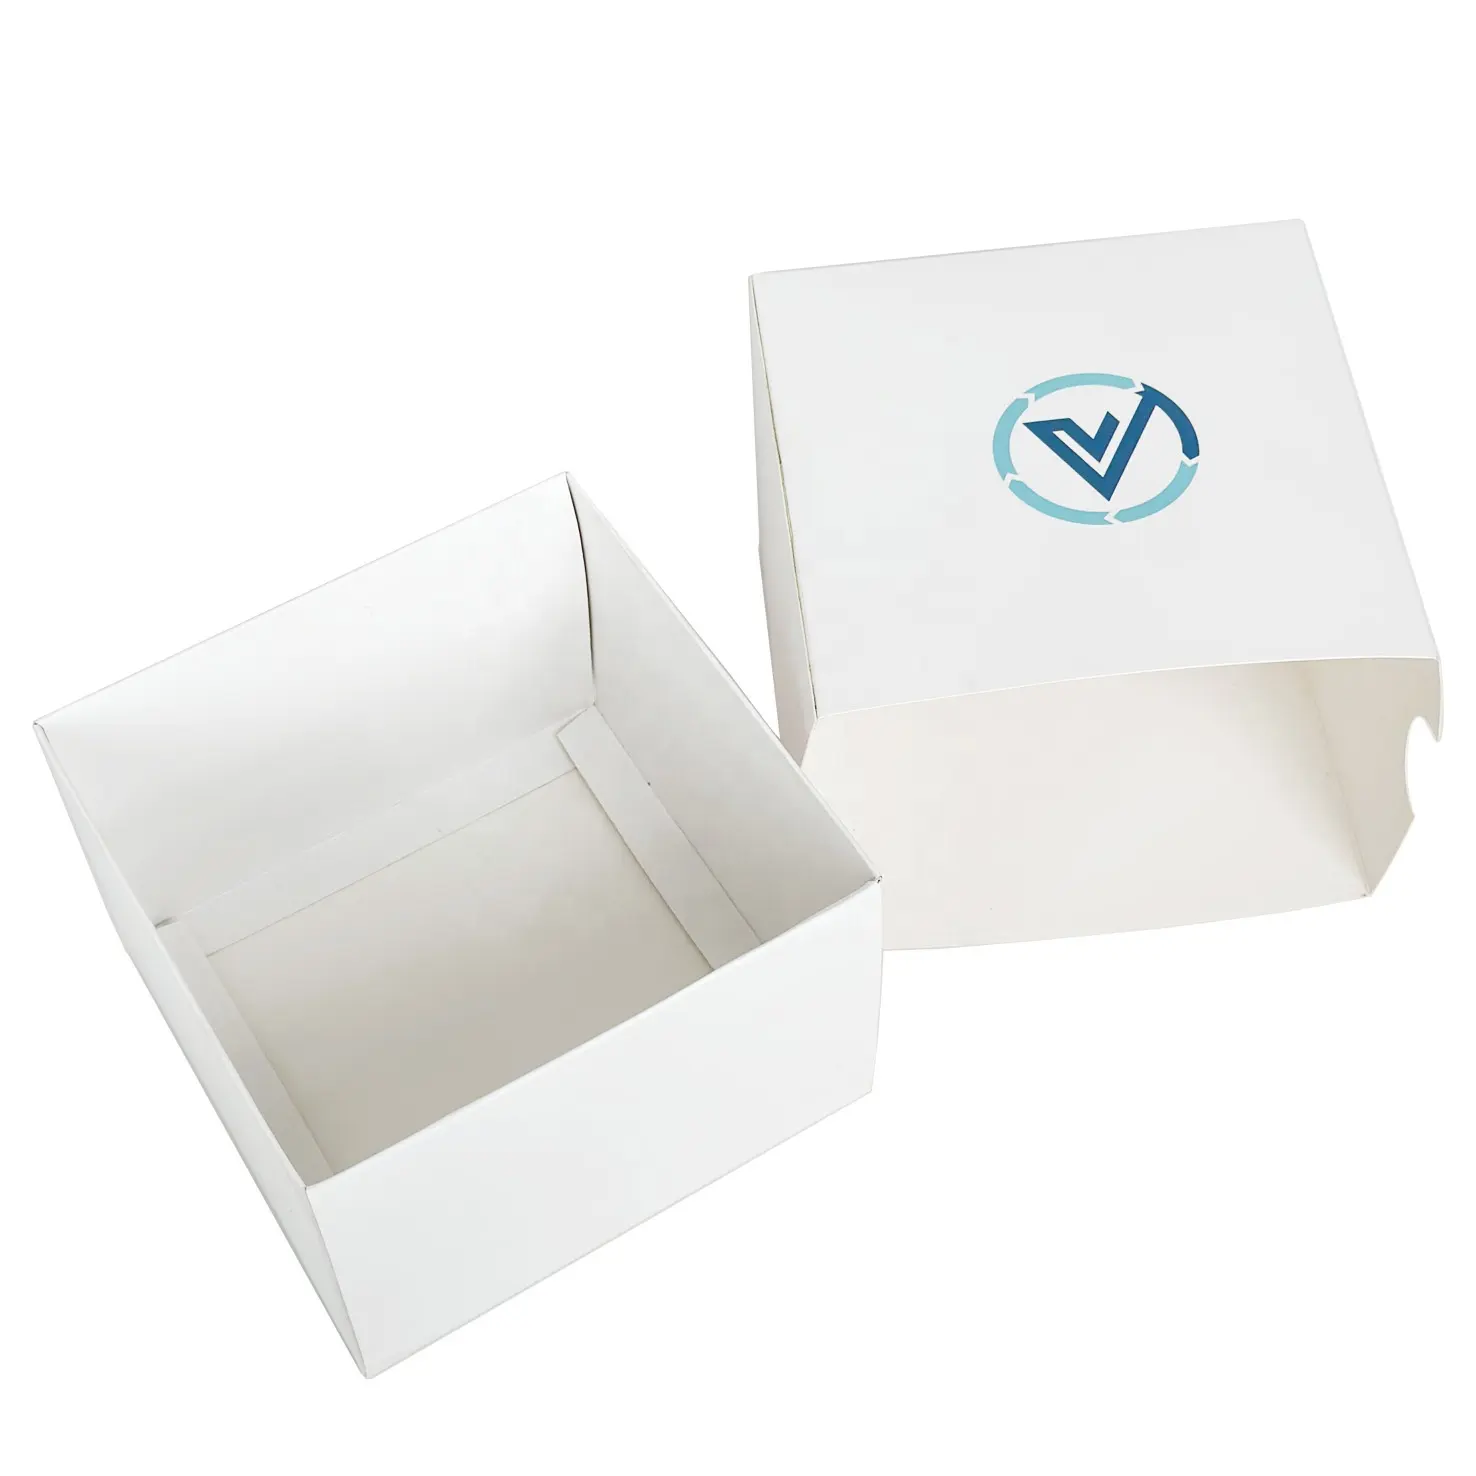 Göz kremi Sause posta için el oyunları Mouse Pad bakım kozmetik karton kağıt kutuları